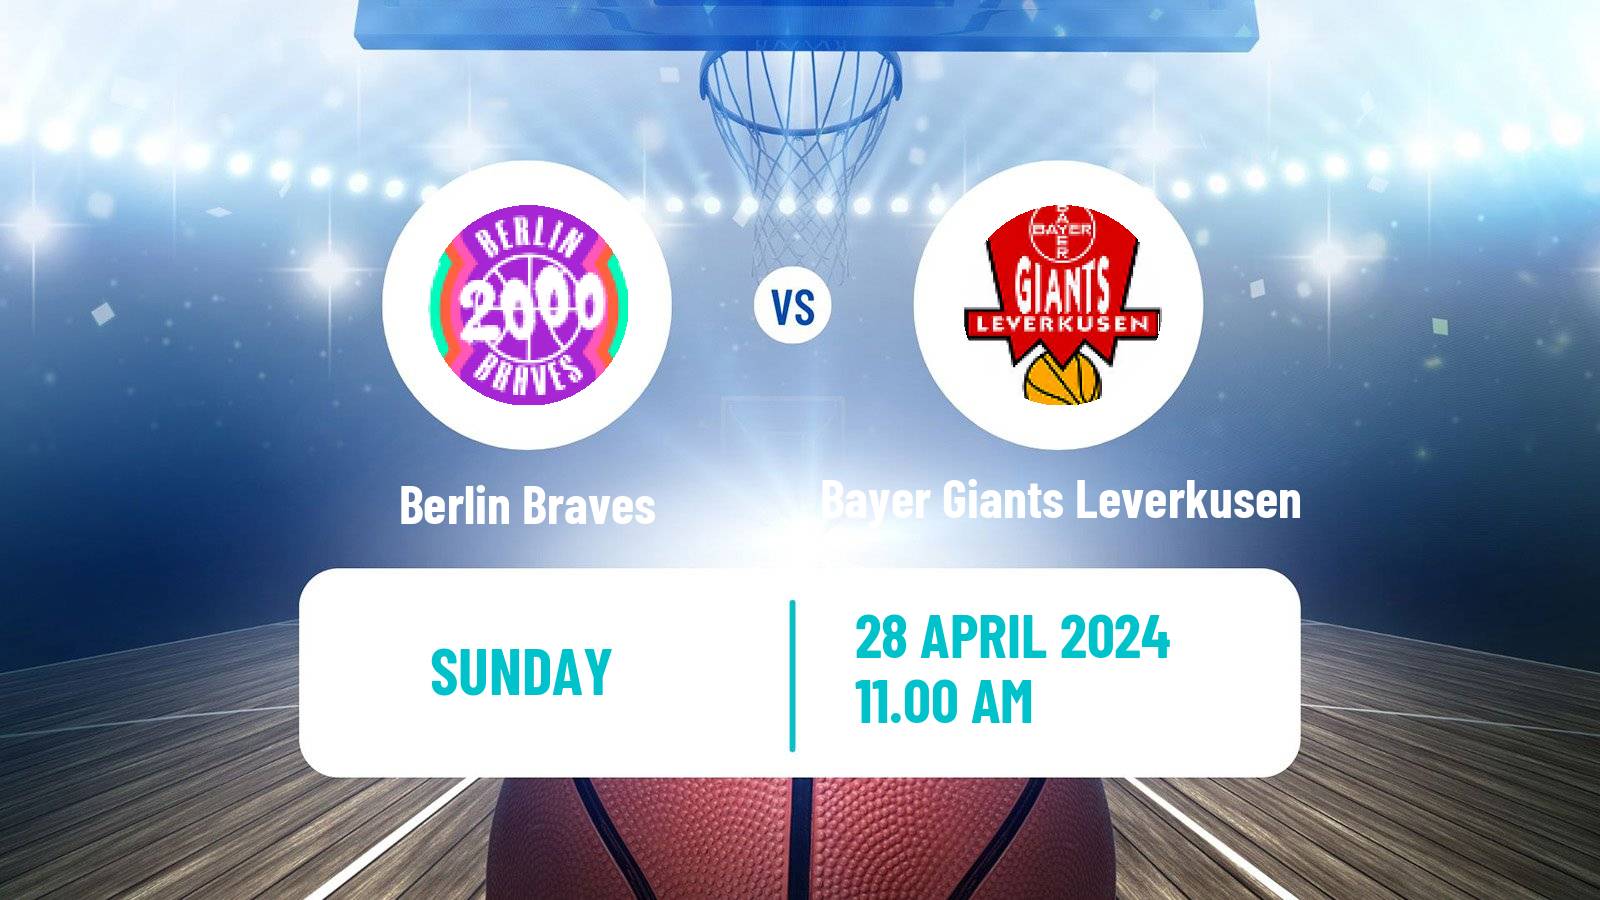 Basketball German Pro B Basketball Berlin Braves - Bayer Giants Leverkusen